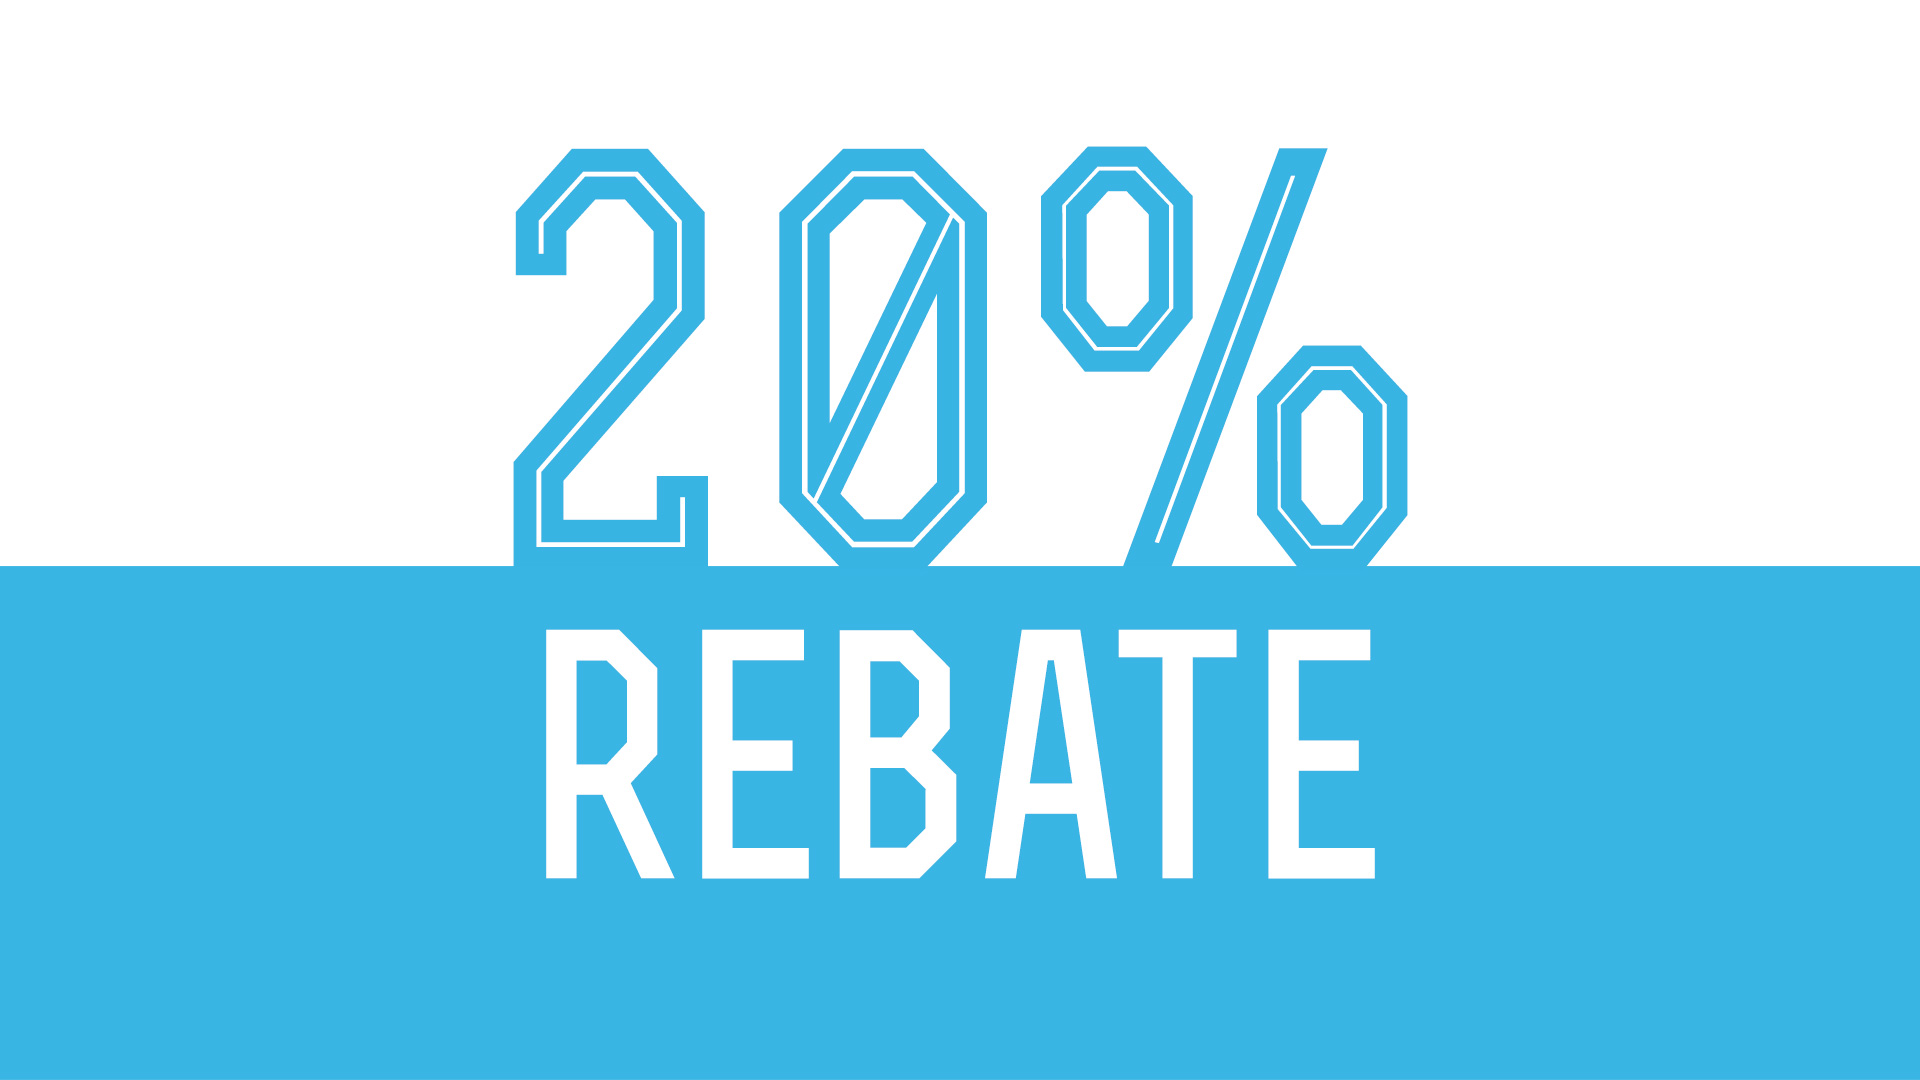 20% Rebate